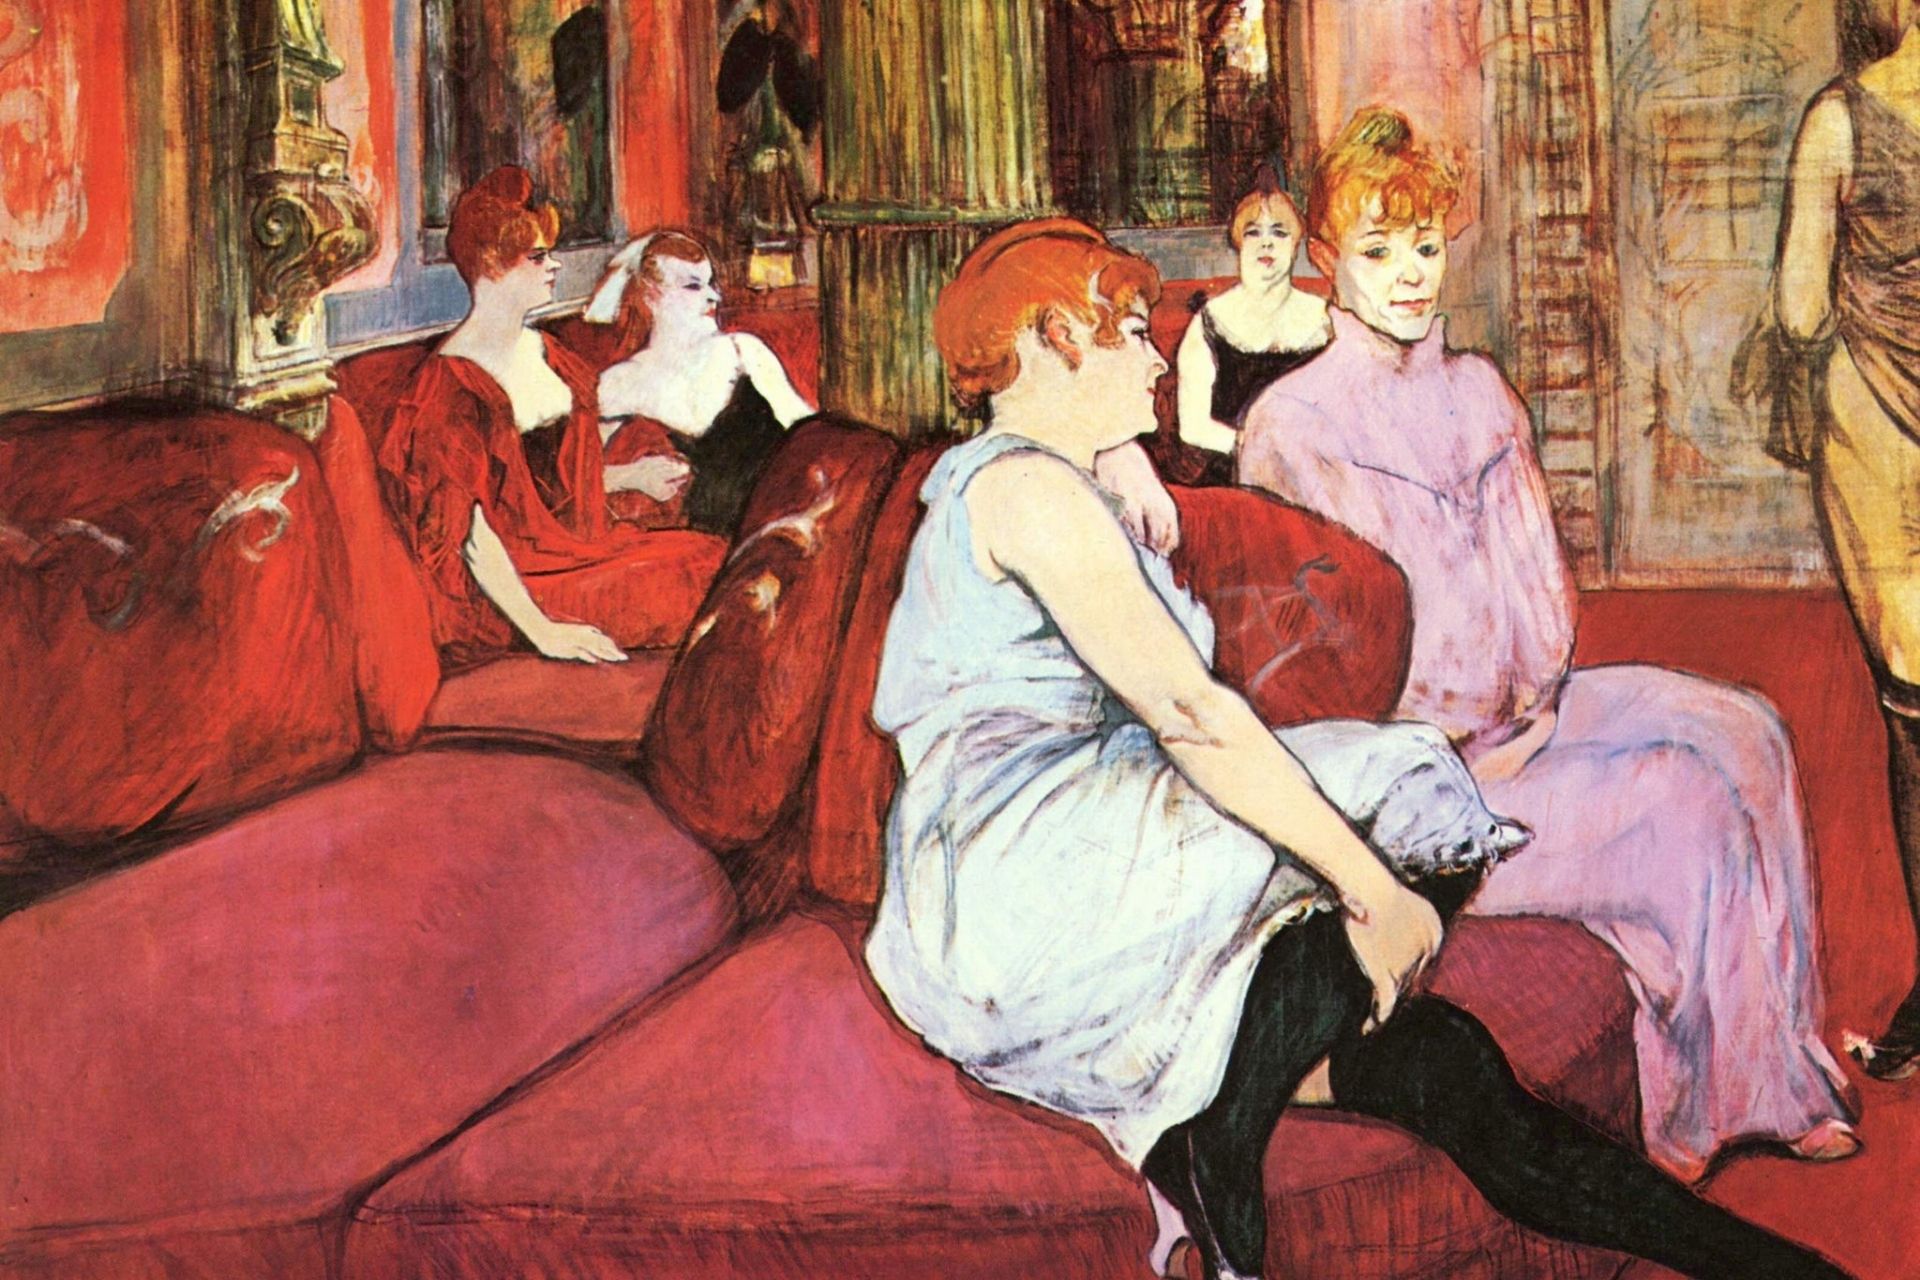 Mostra di Toulouse Lautrec a Milano